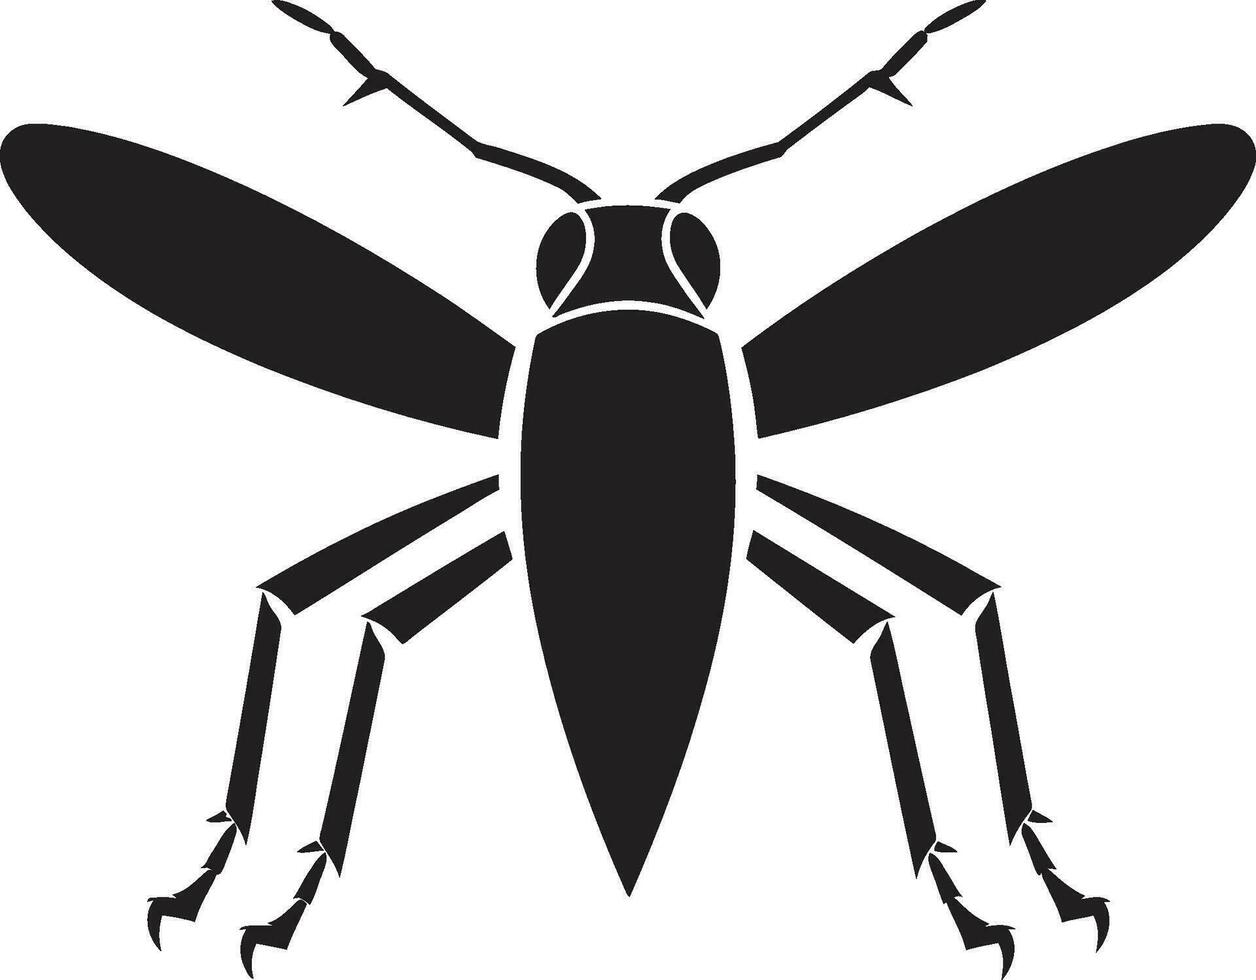 jumpercraft crafting vektor insekt logotyper greenleap ikoniska gräshoppa emblem design